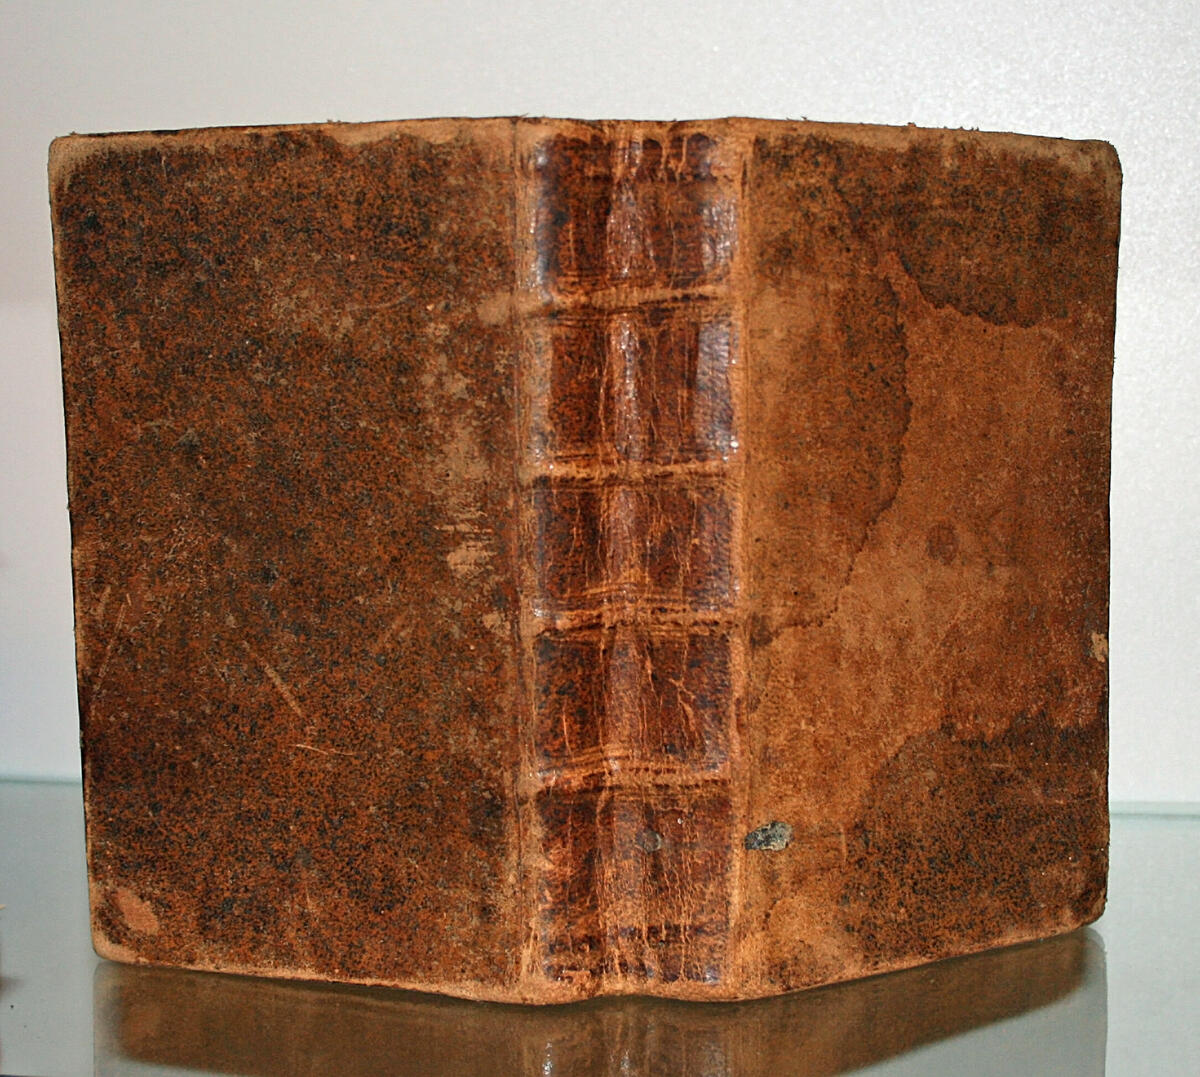 Bibel, tryckt 1755. Petrus Fjellström, kyrkoherde i Lycksele, var den som först översatte Nya Testamentet 1755 till lapska språket.